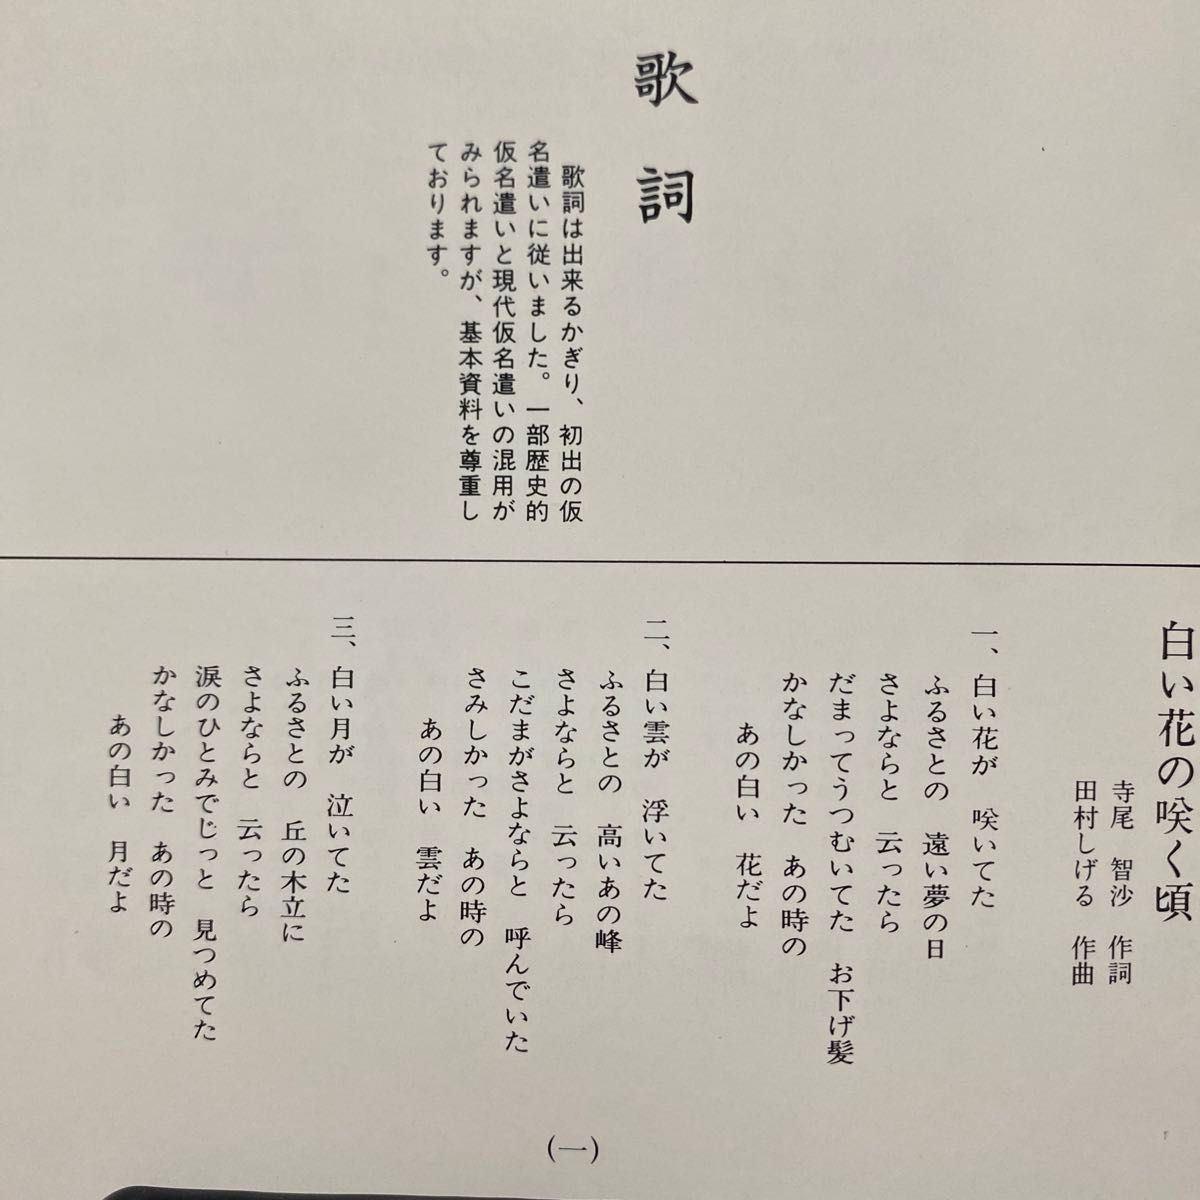 白い花の咲く頃 日本抒情歌集／鮫島有美子　ソプラノ歌手　名曲(白い花の咲く頃、青い山脈、)含む　全16曲収録　セル版　　　　　　⑧